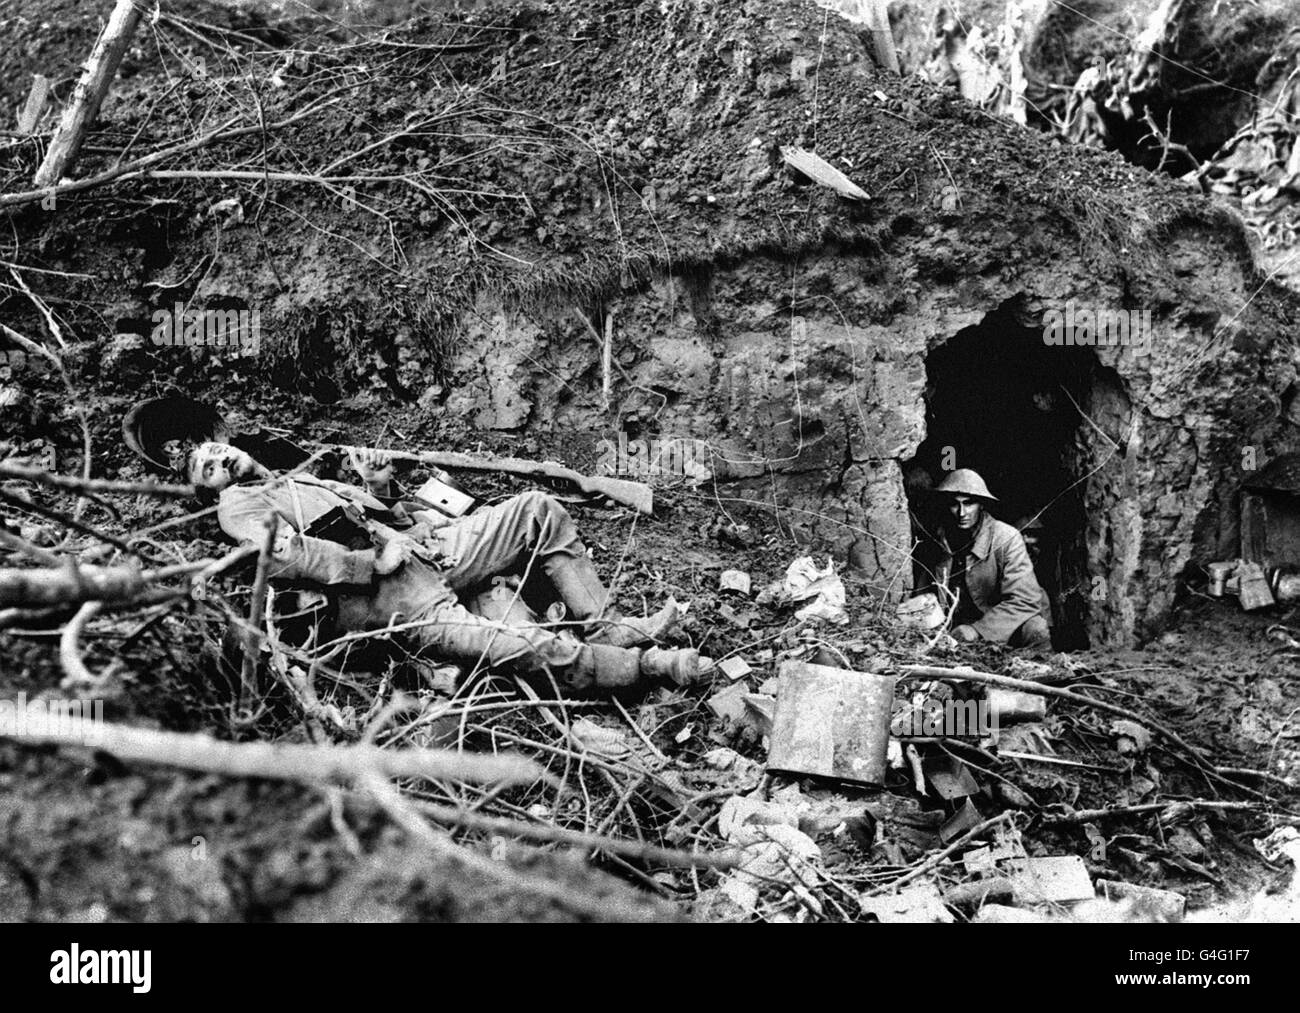 Ein britischer Soldat blickt aus einem ausgegraben, während der Schlacht an der Somme in der Nähe von Flers der Leichnam eines toten deutschen Soldaten liegt. Stockfoto